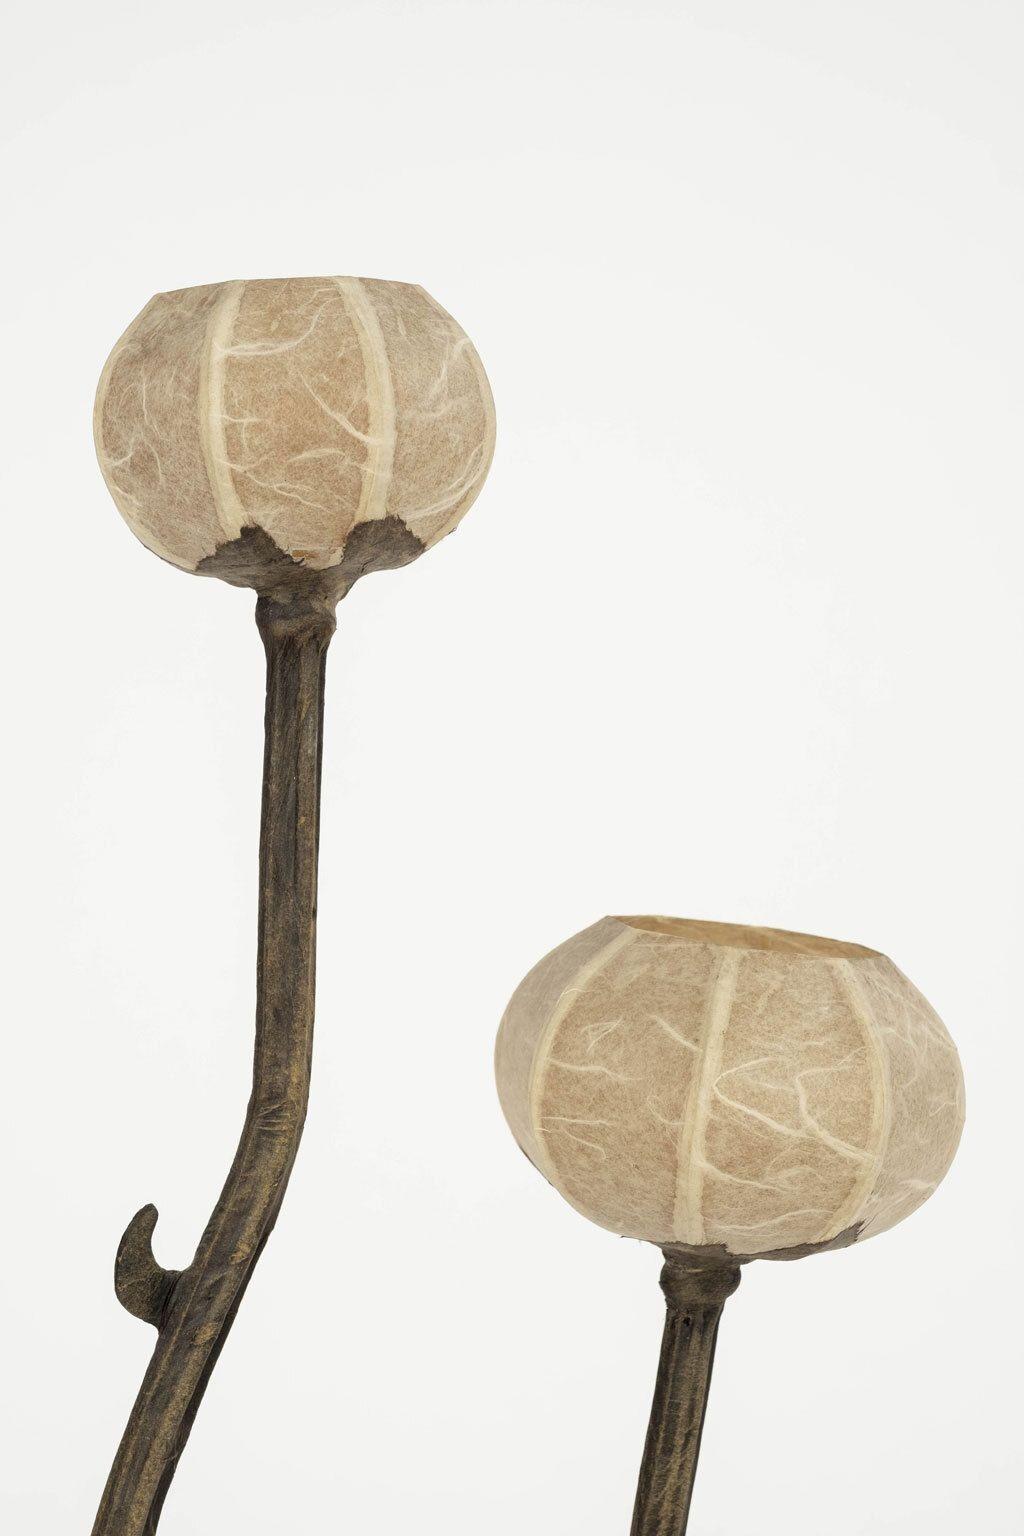 Lampe de table vintage à fleurs personnalisée circa 1950-1979. Lampe personnalisée composée de papier, fil de fer, bois et papier mâché. Les abat-jour sont des fleurs en papier. Tous peints à la main. Nouvellement câblé pour une utilisation aux